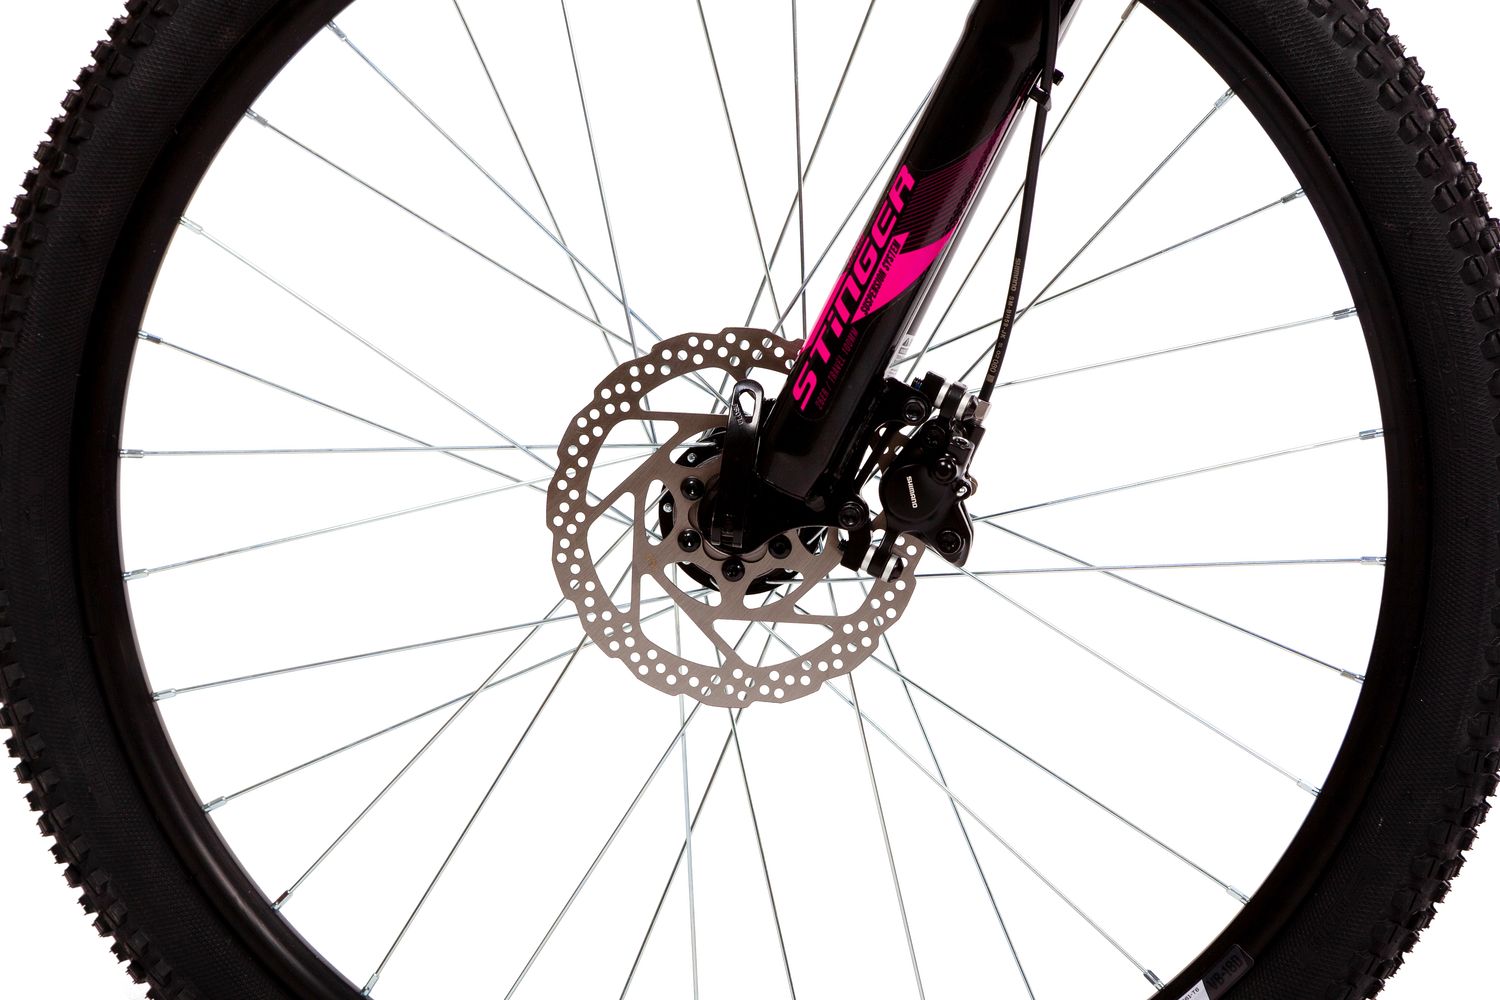 Женский велосипед Stinger Laguna Pro 26, год 2021, цвет Синий, ростовка 17